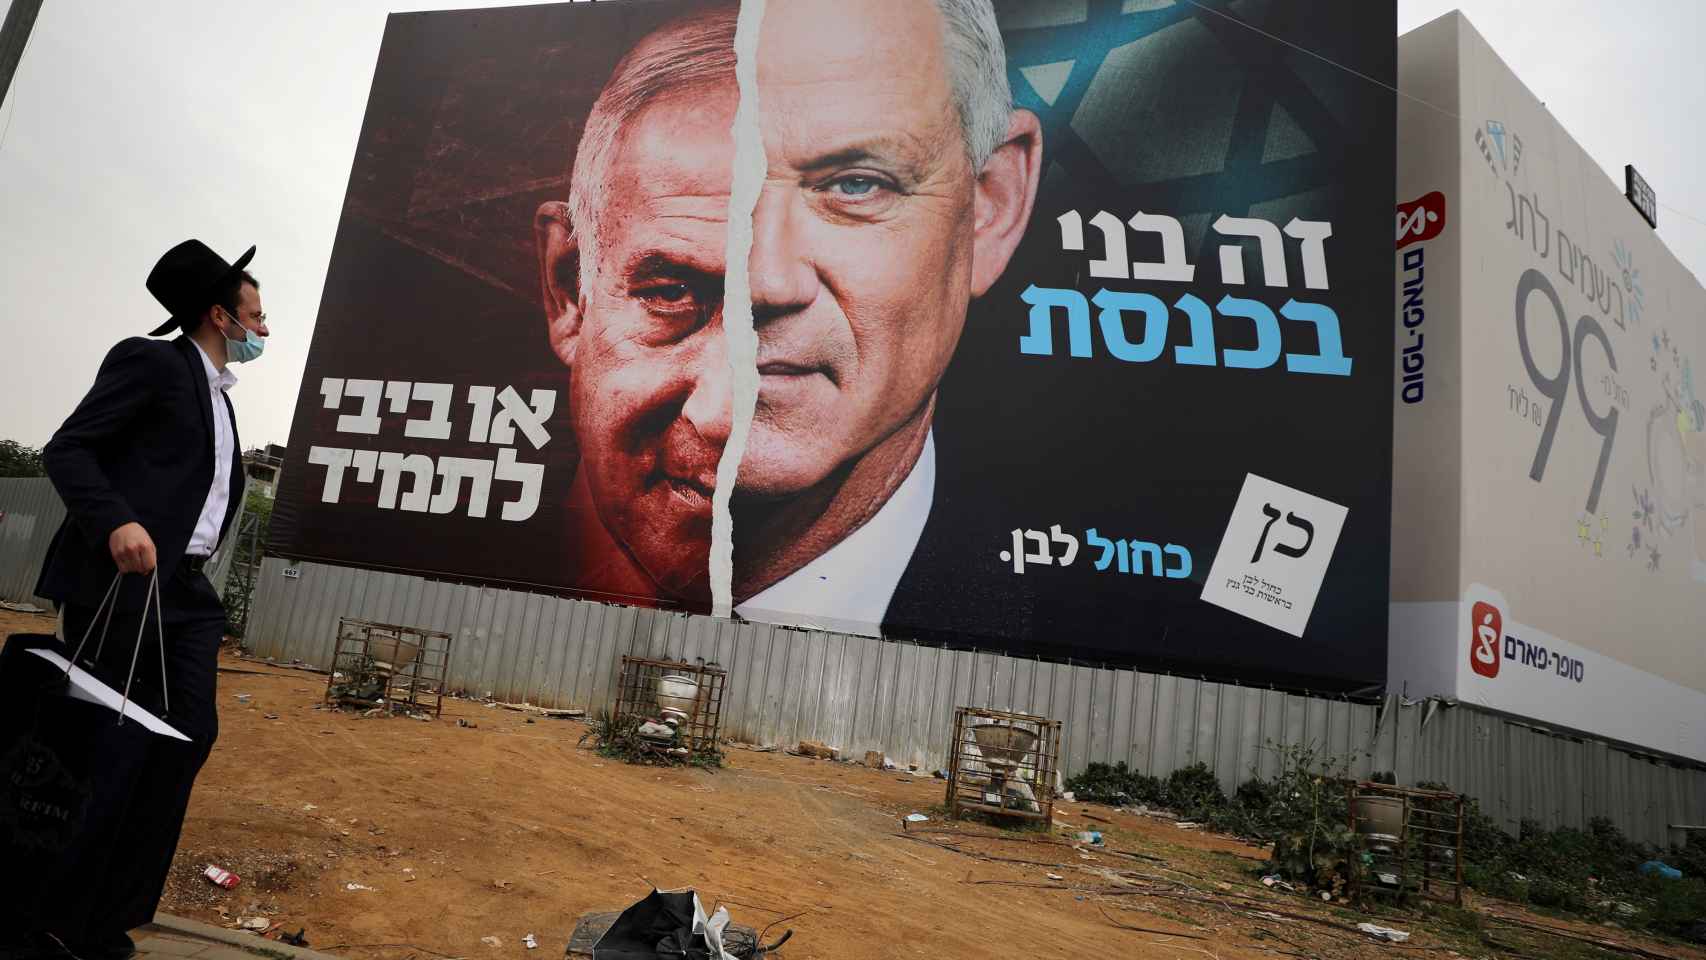 Un judío ultraortodoxo ante un cartel electoral del partido centrista Azul y Blanco, donde aparece Netanyahu (i) enfrentado a Beny Gantz (d).